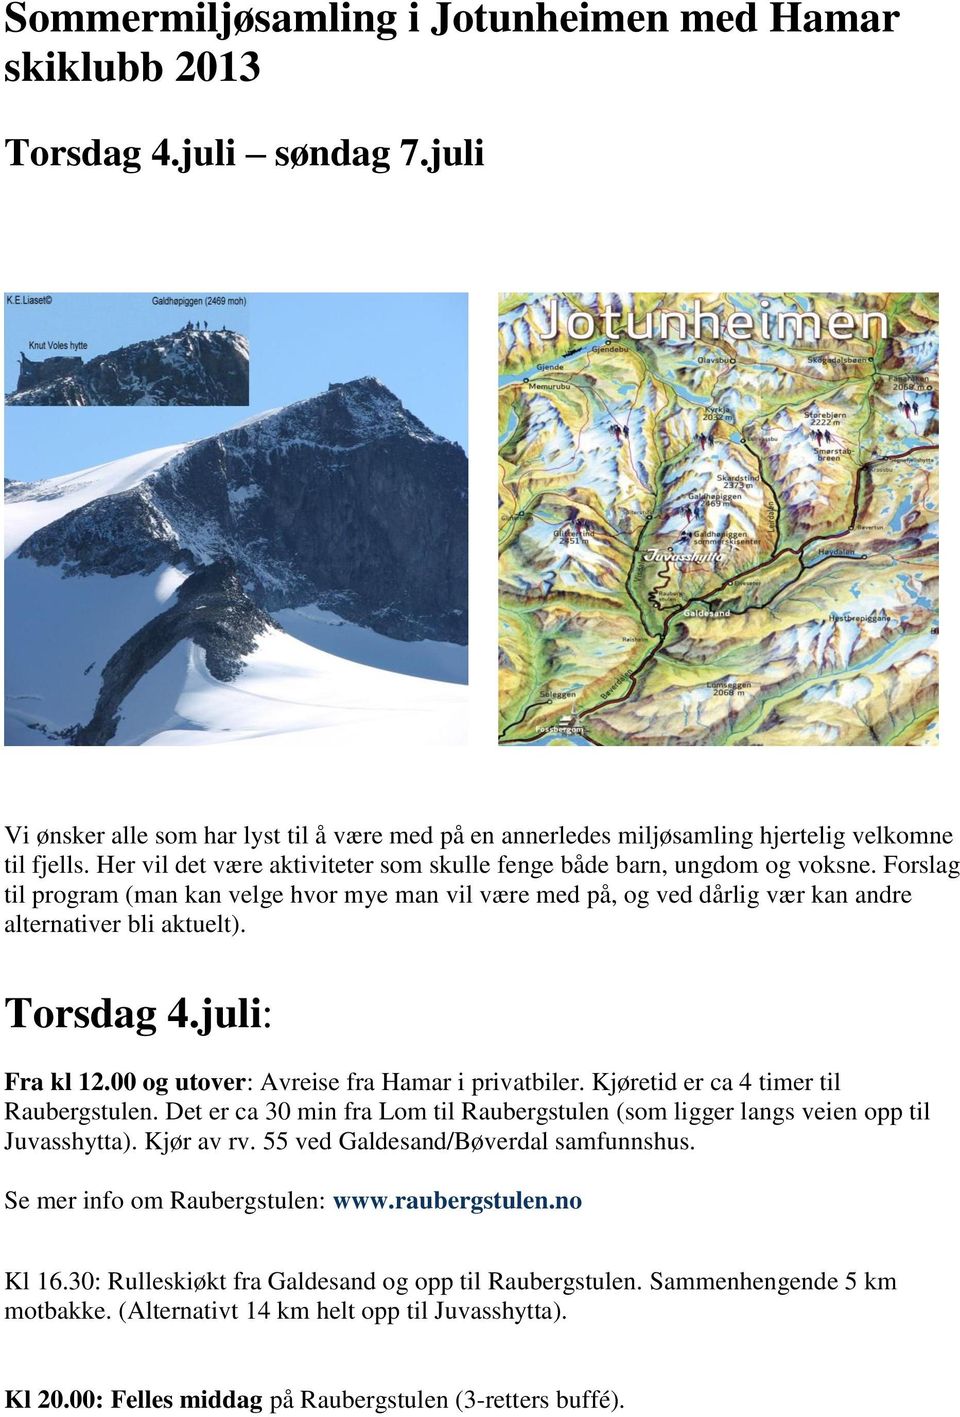 Torsdag 4.juli: Fra kl 12.00 og utover: Avreise fra Hamar i privatbiler. Kjøretid er ca 4 timer til Raubergstulen.